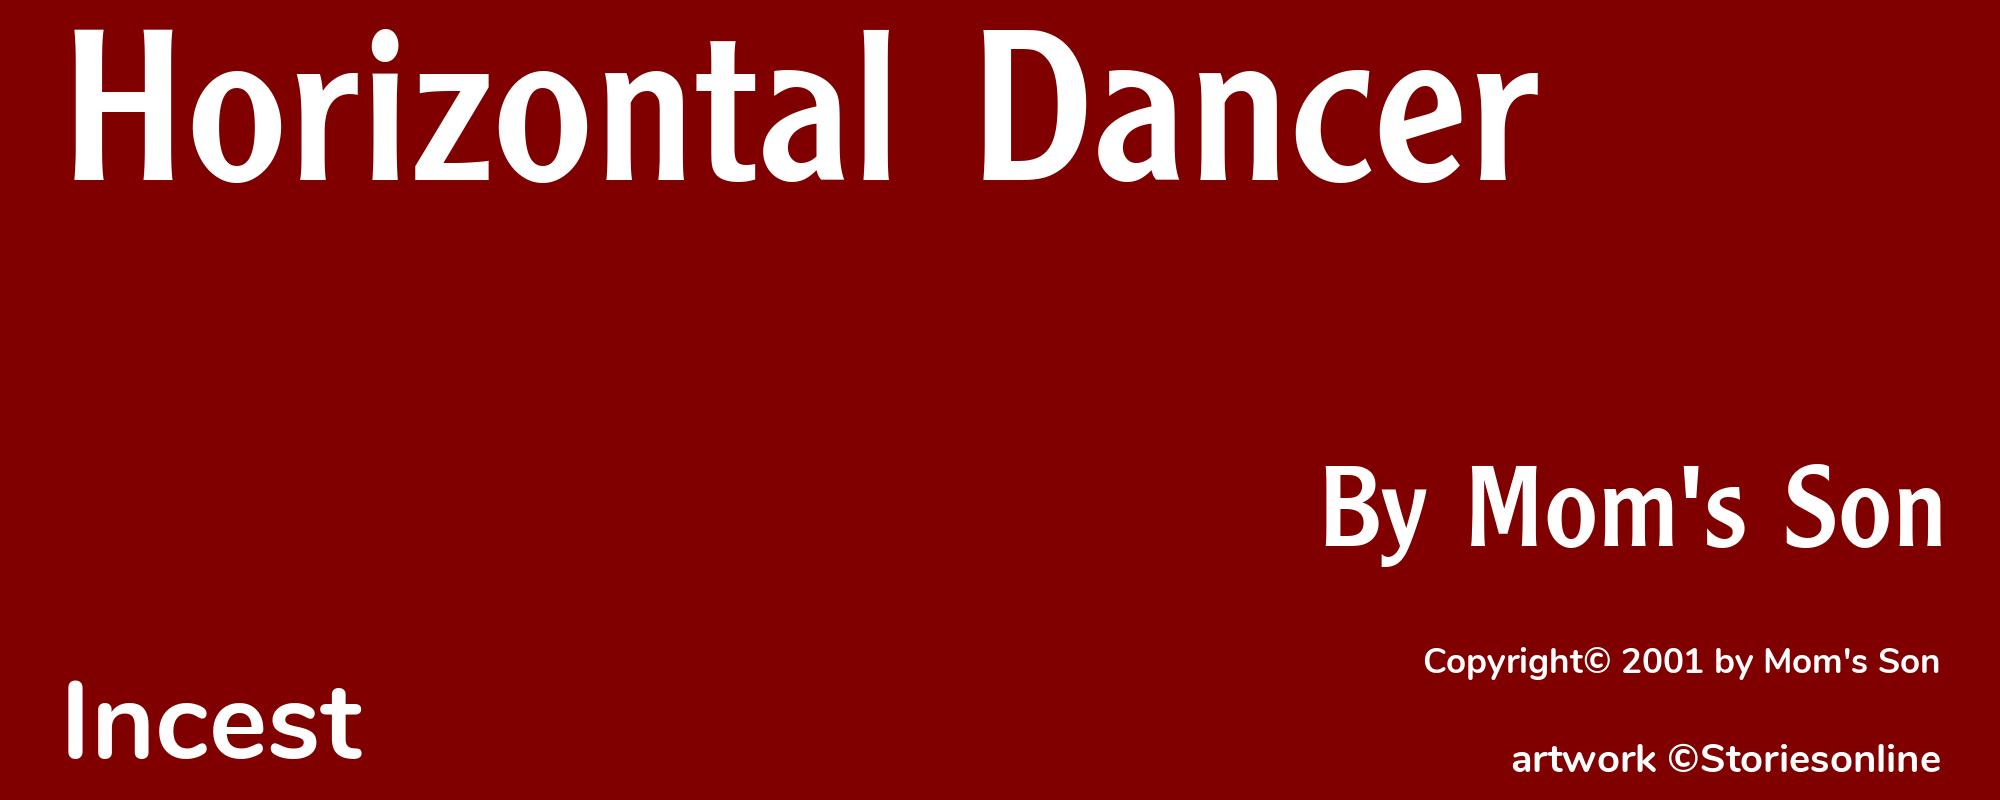 Horizontal Dancer - Cover